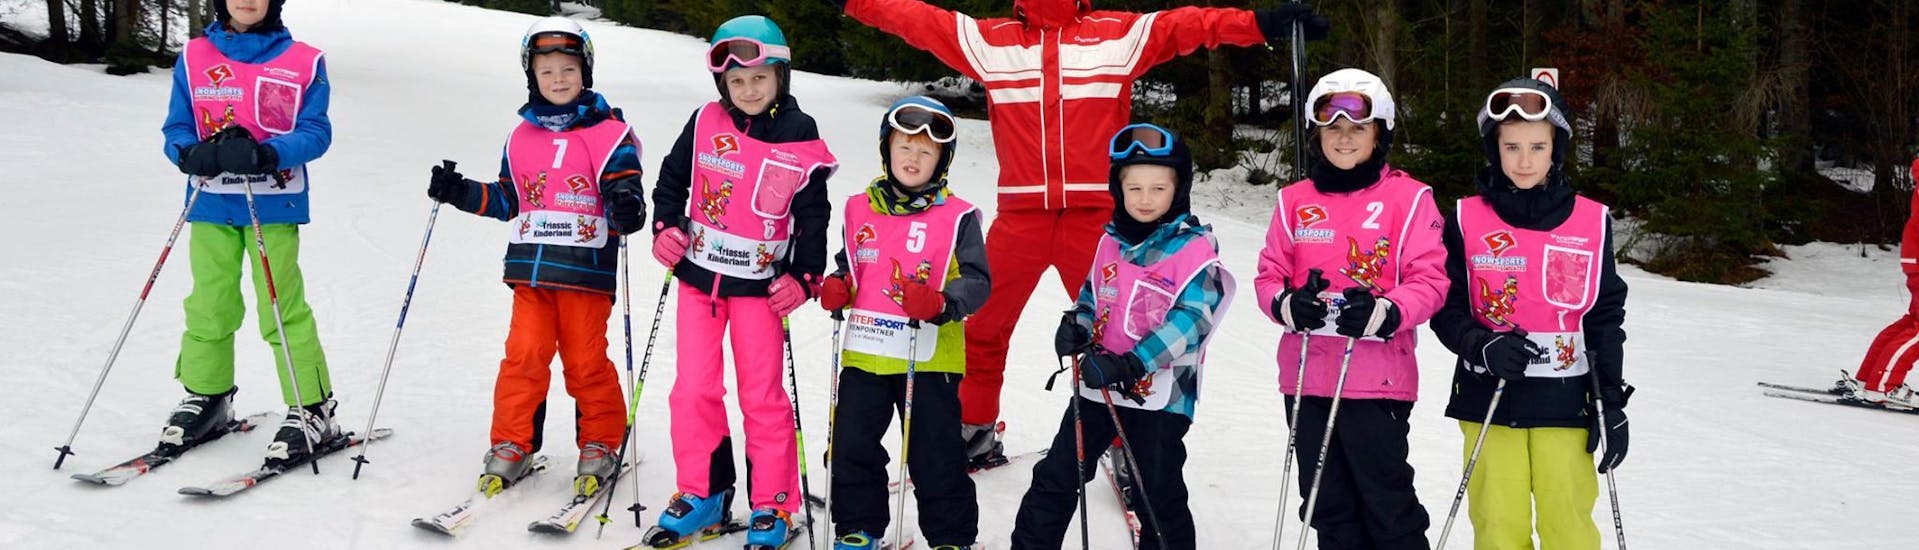 Cours de ski Enfants dès 5 ans - Avancé avec Skischule Waidring Steinplatte.